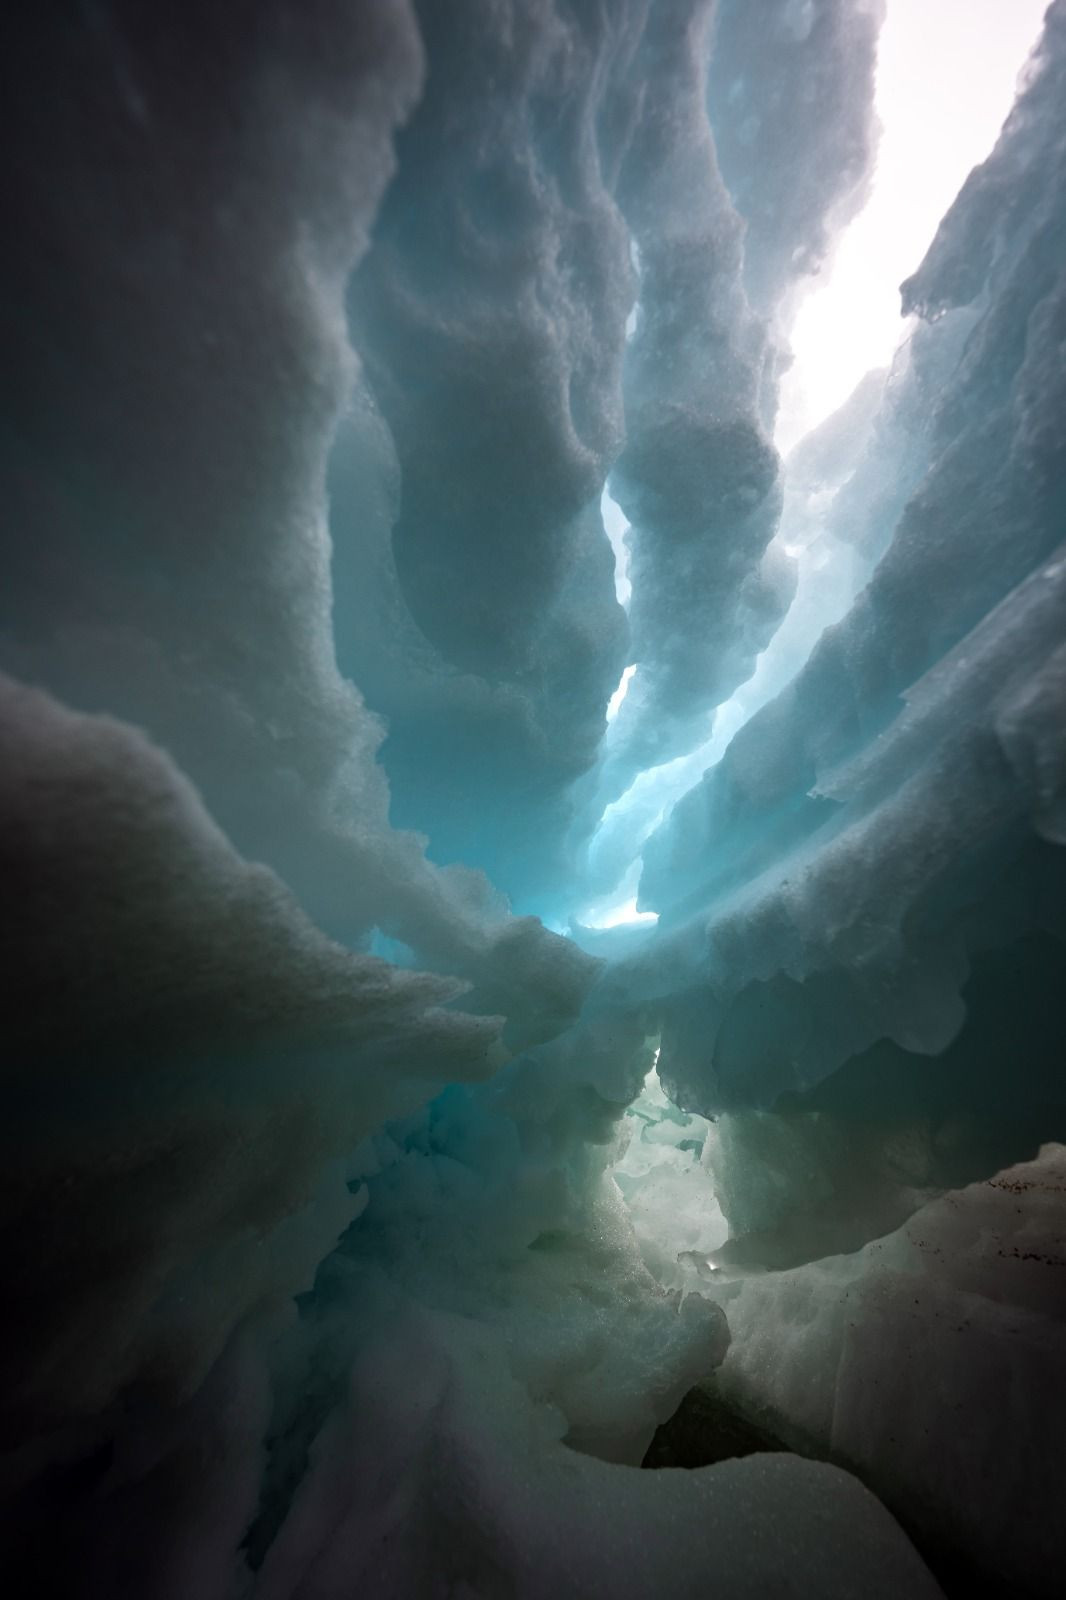 Buzulun içi fotoğraflandı: 'Dünyanın sonu olabilir' - Sayfa 4